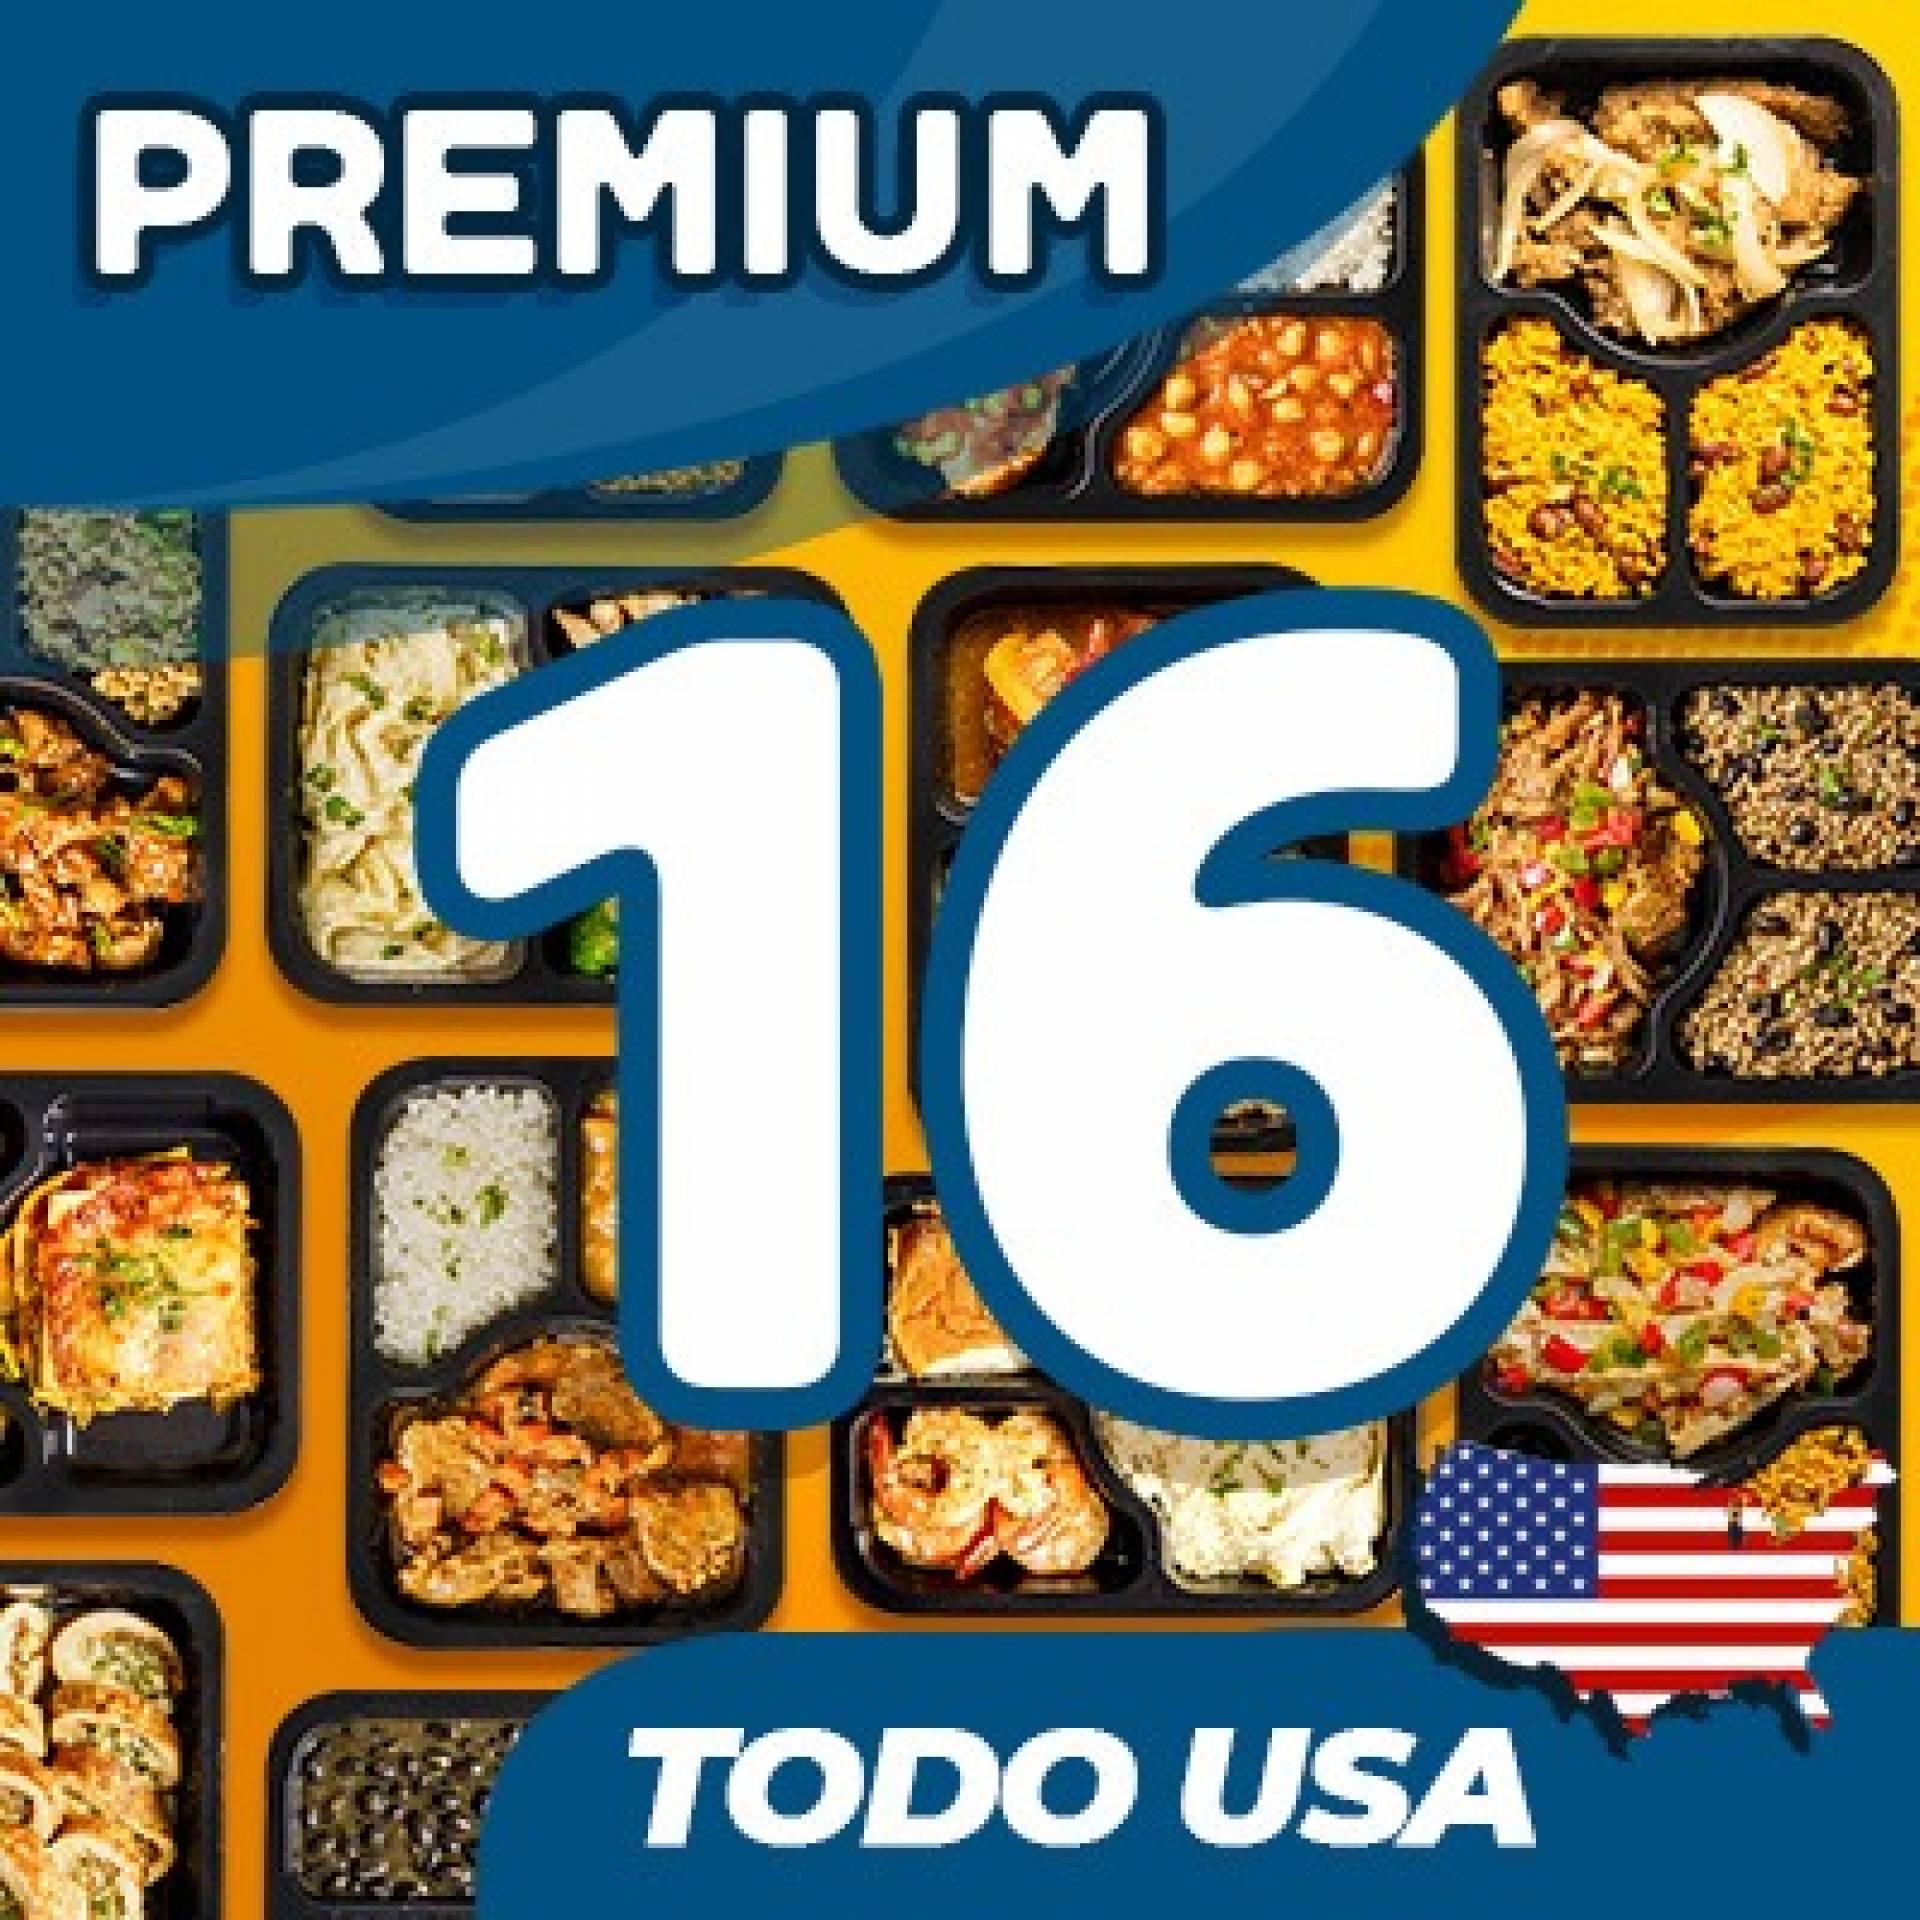 16 Platos - MENU PREMIUM USA ($10.59 por plato refrigerado)